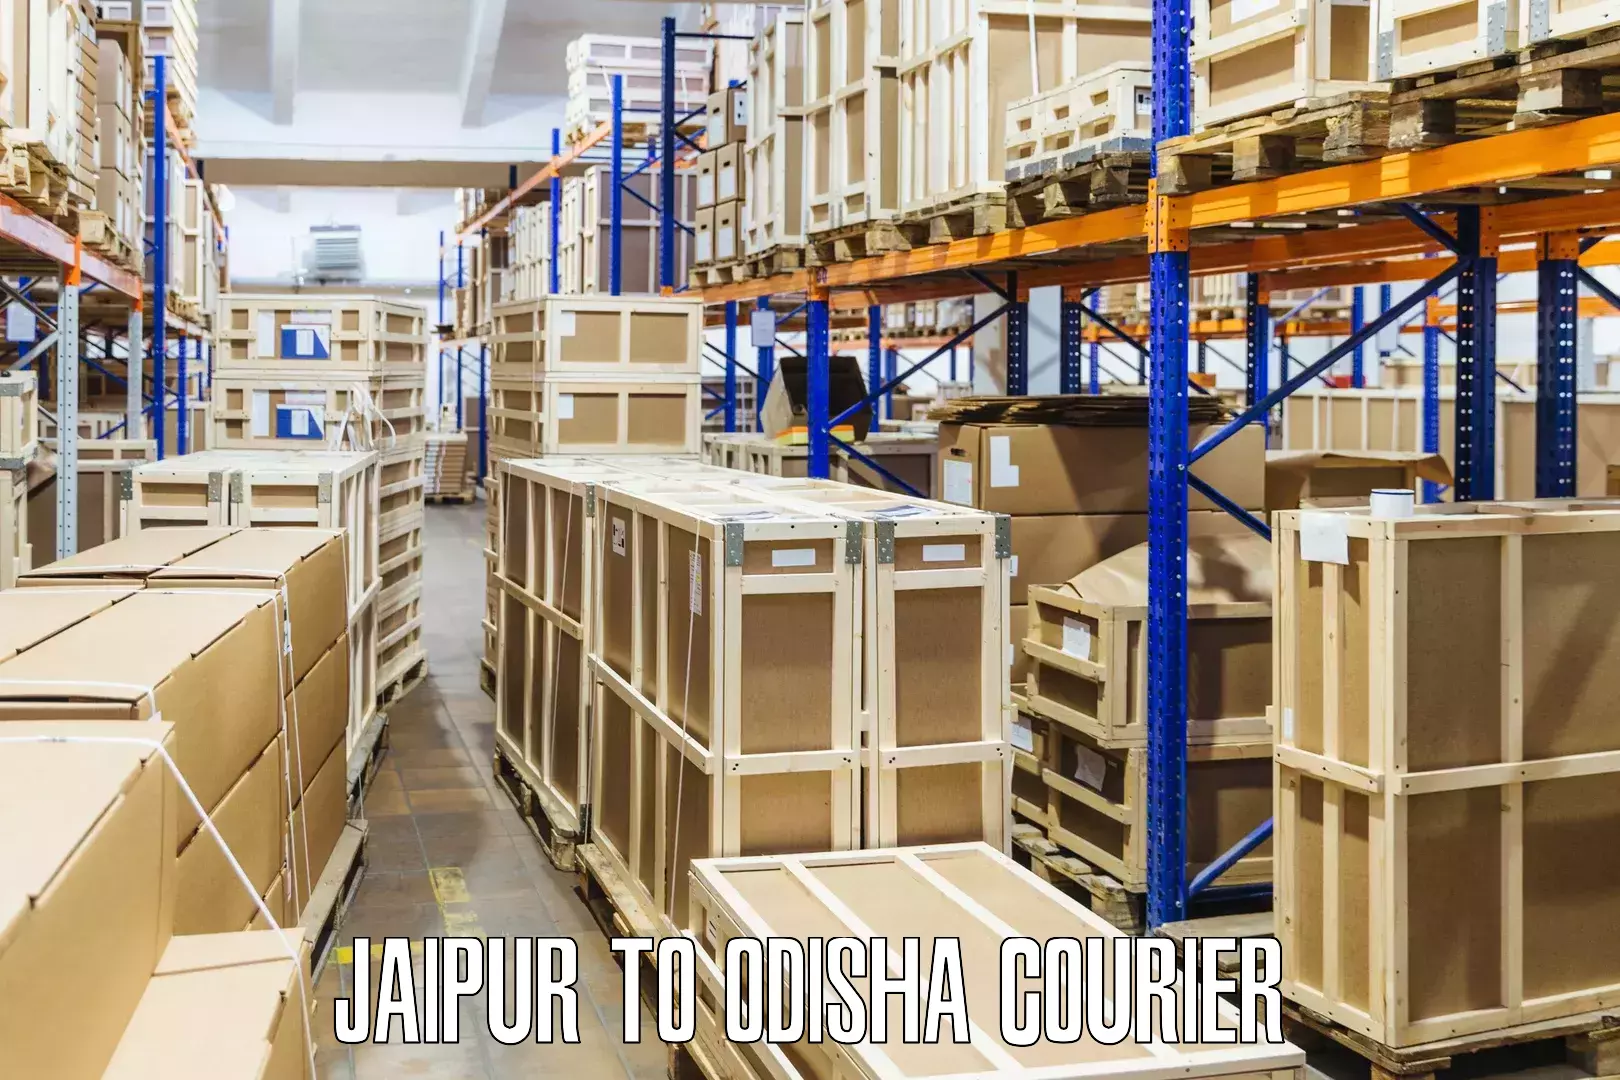 Efficient parcel service Jaipur to Pottangi